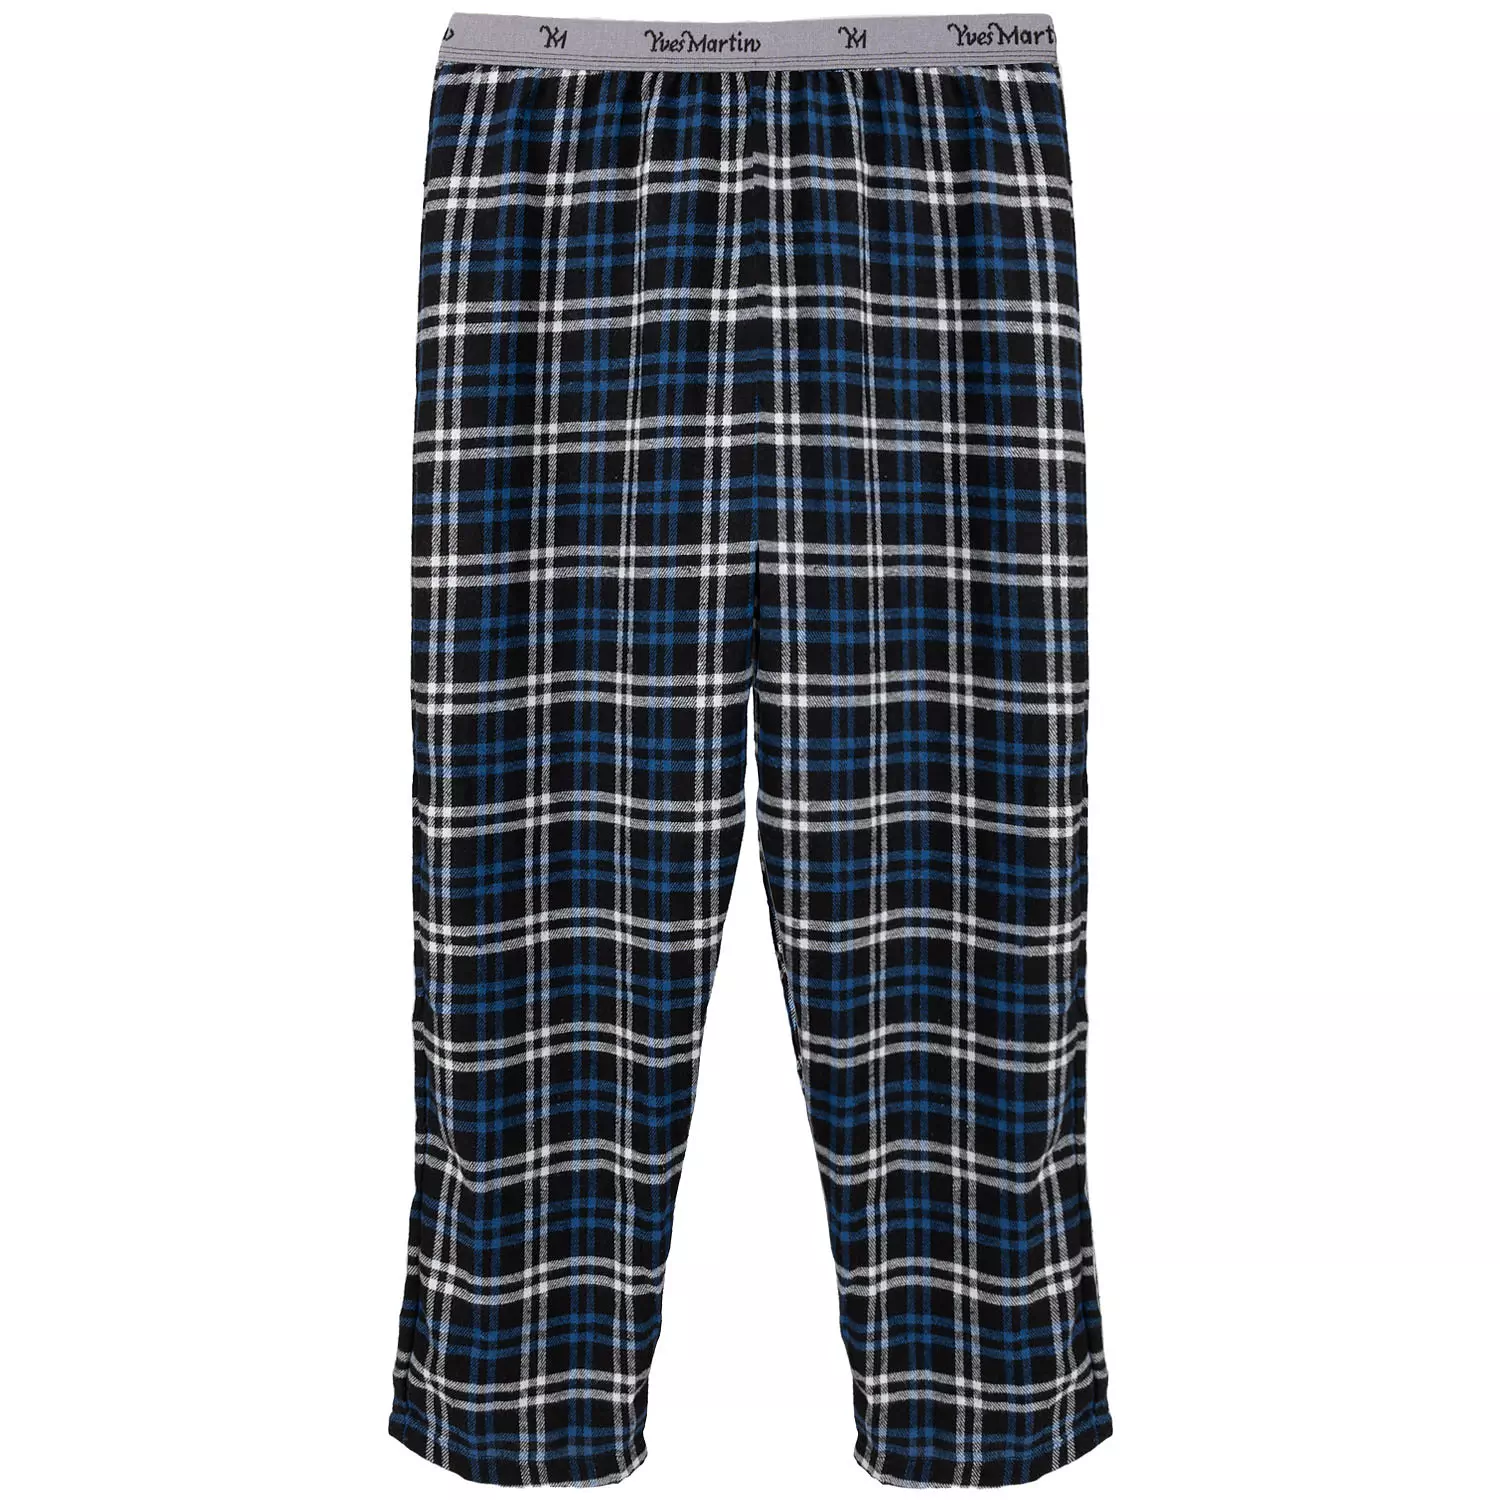 Yves Martin - Pantalon de pyjama en flanelle à carreaux bleus, grand (G)